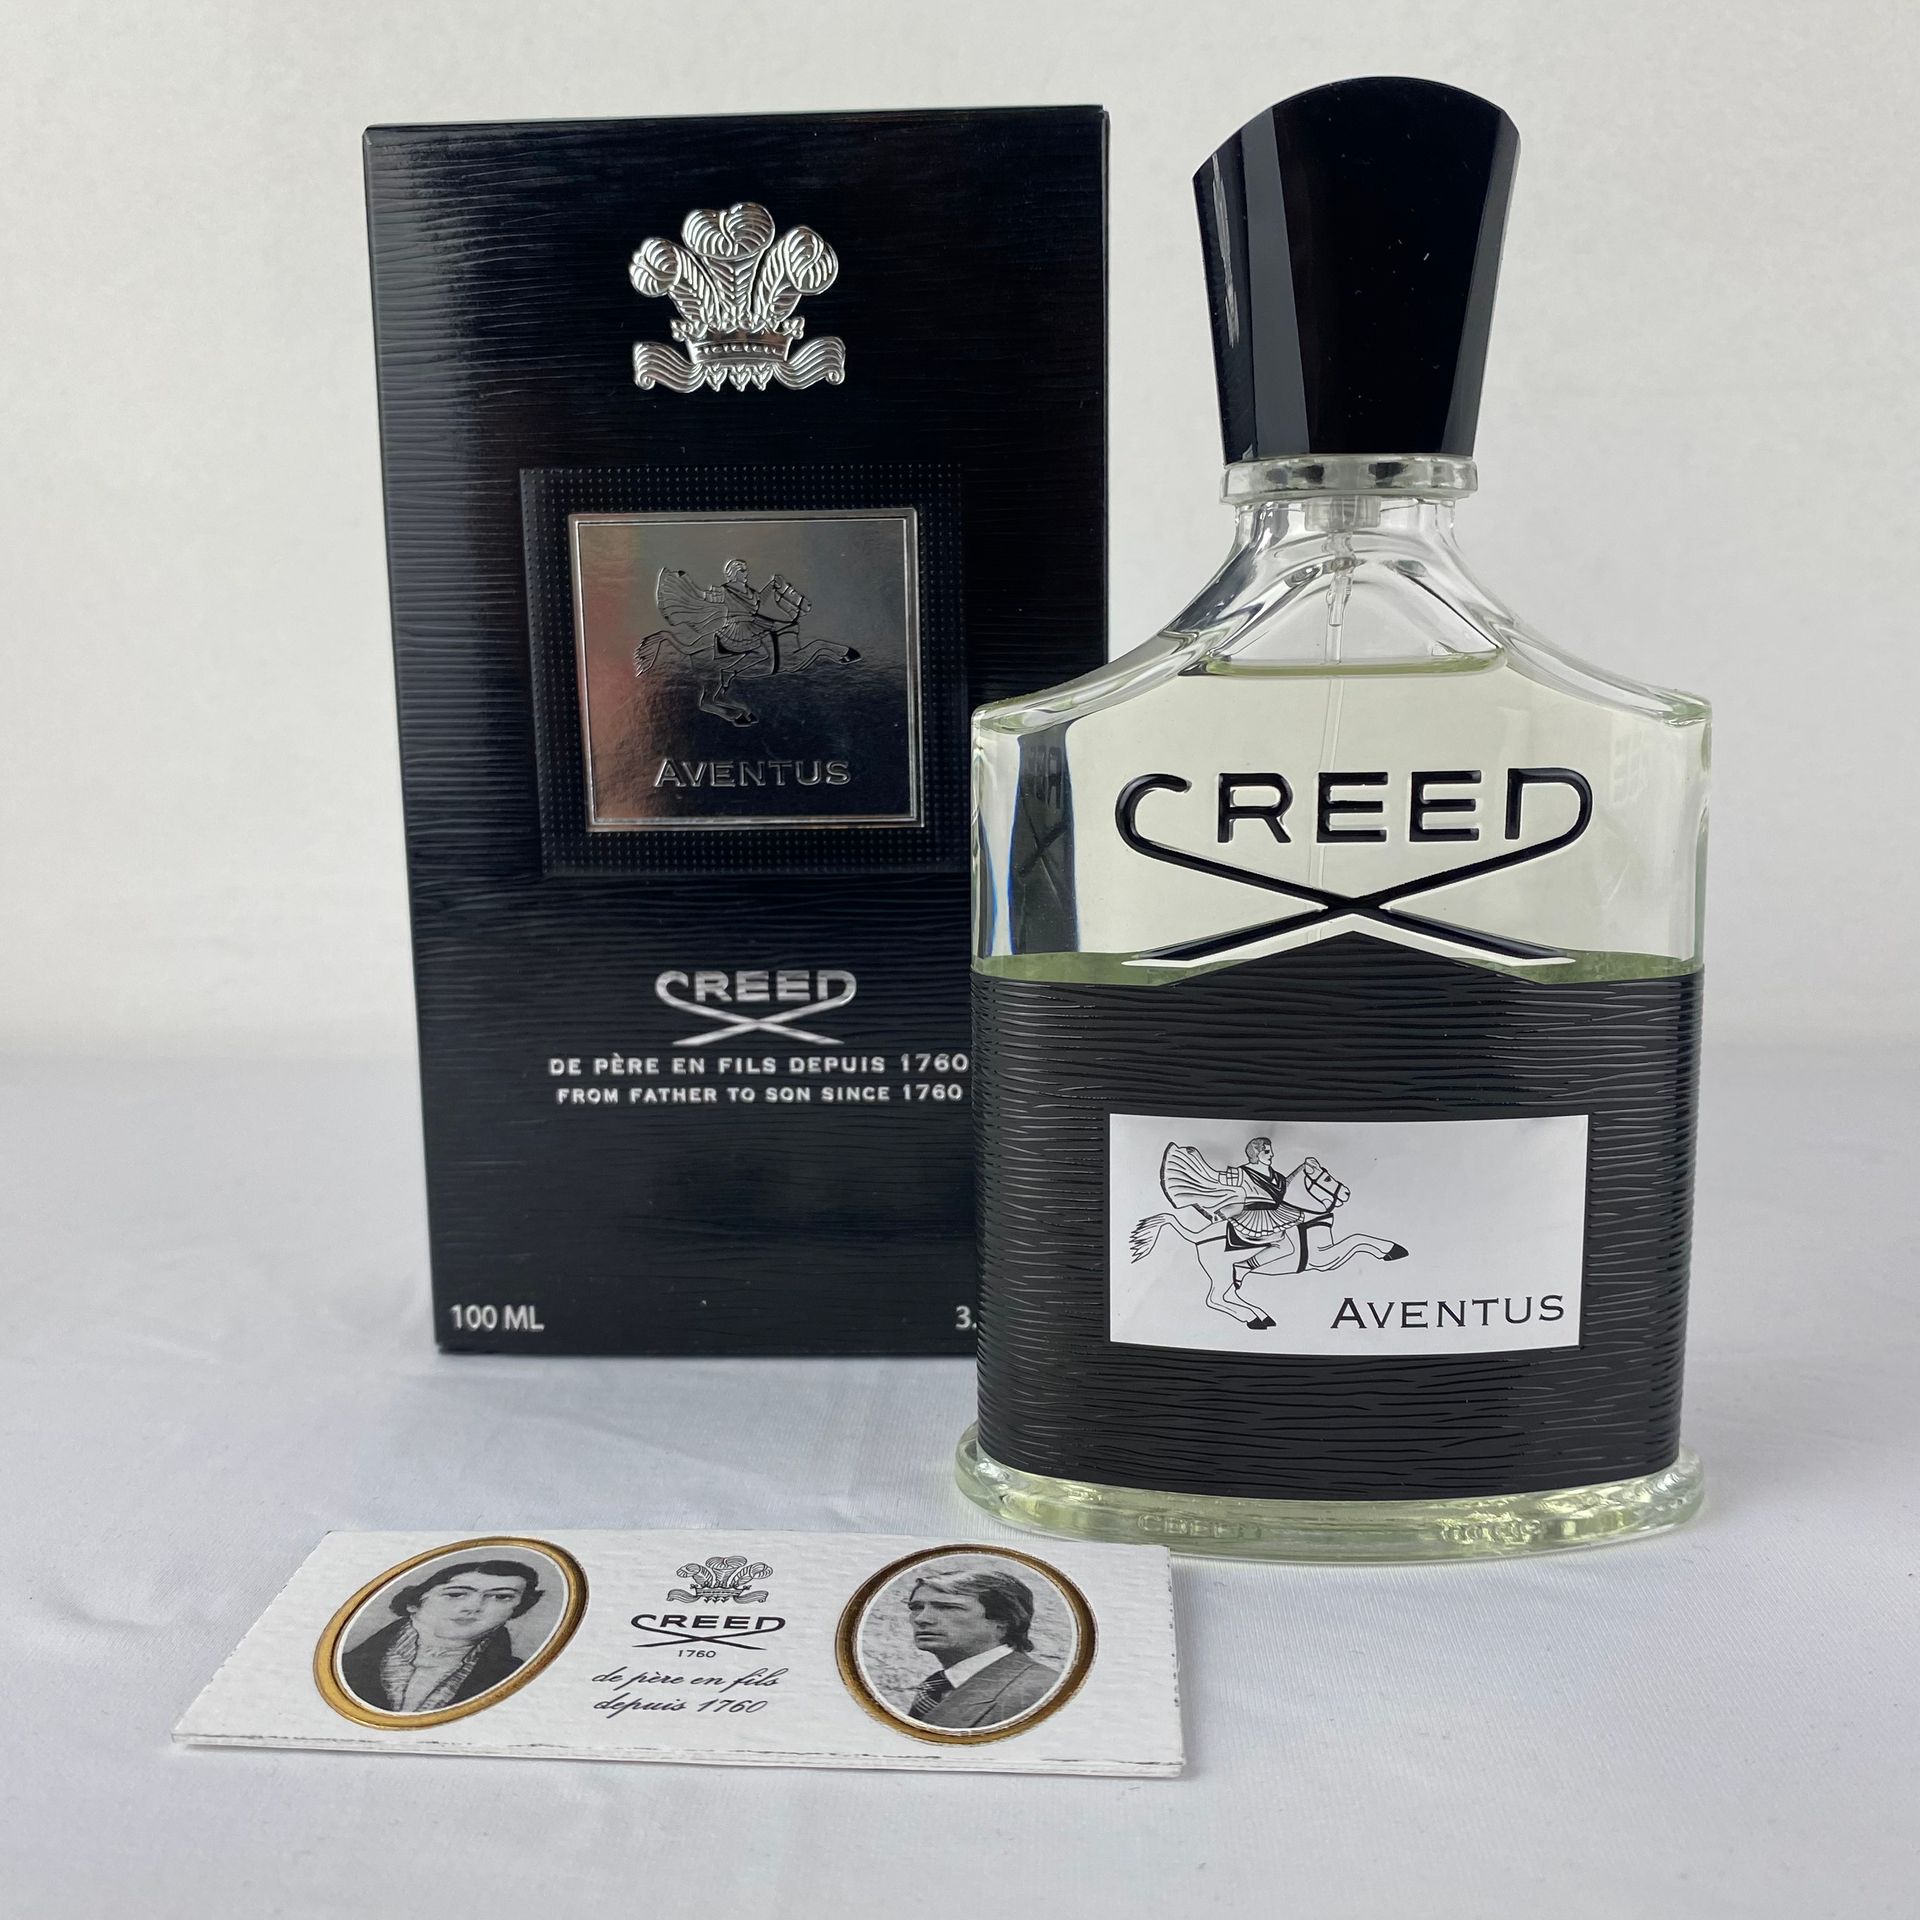 CREED AVENTUS Creed Aventus Eaux de Parfum 100ml一套2件。